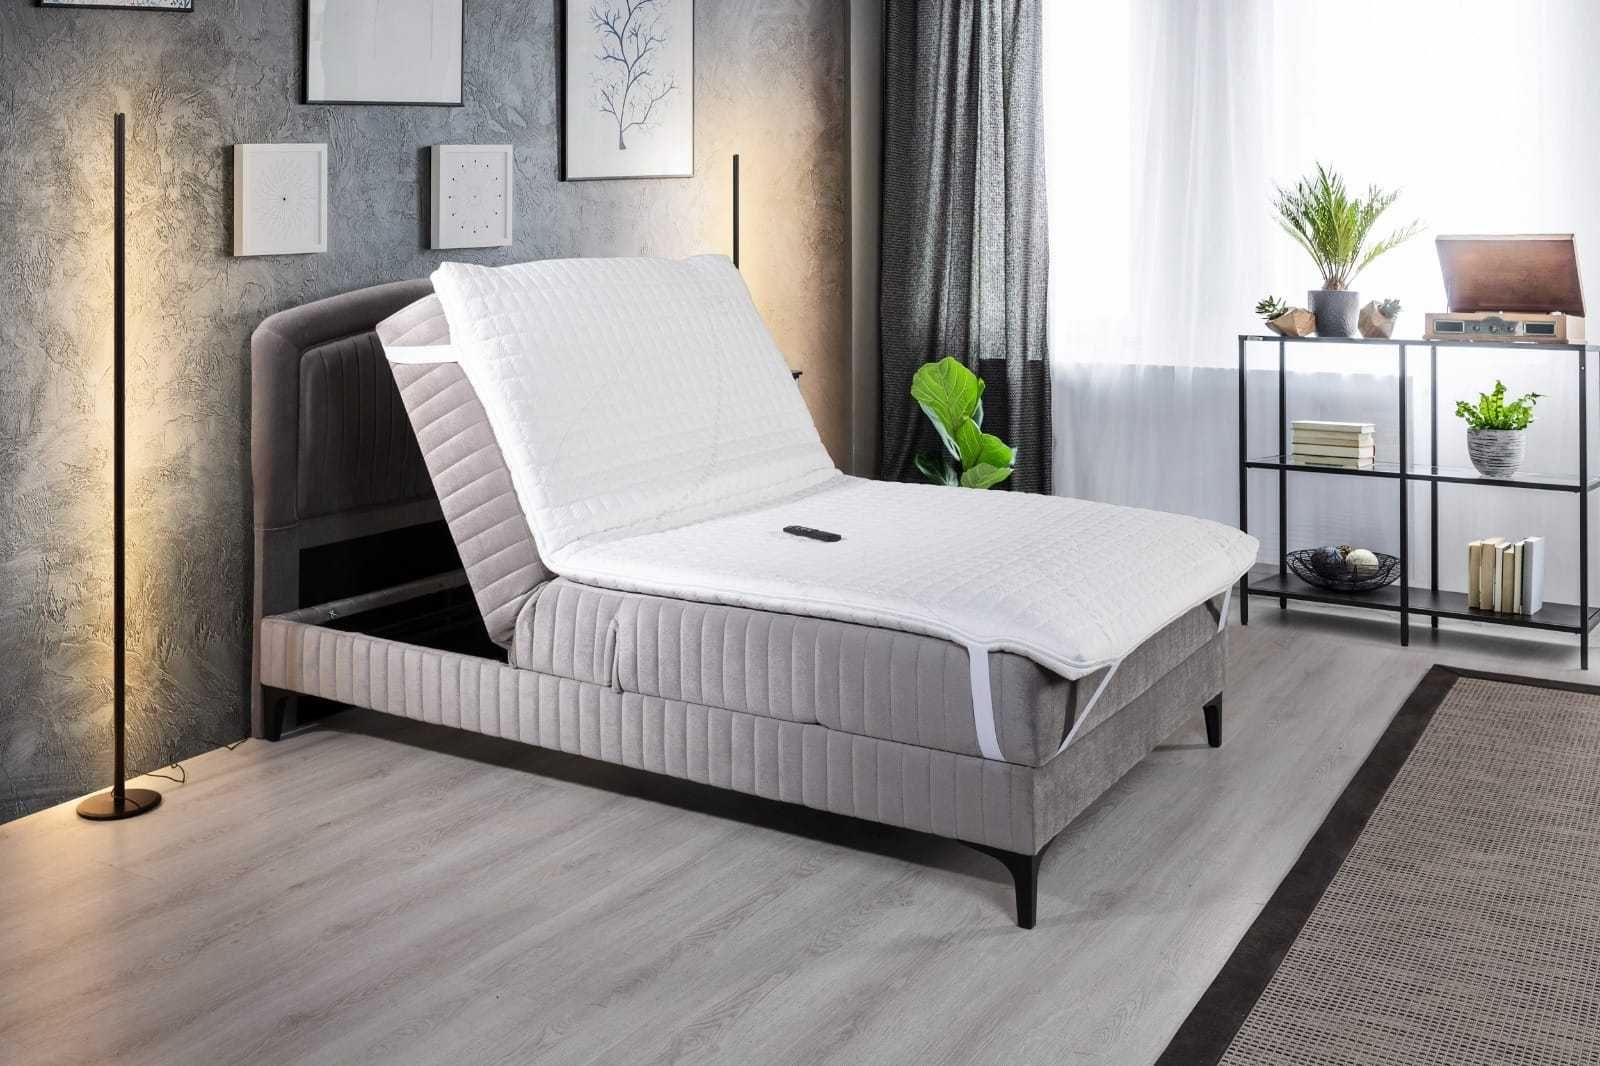 Кровать электроприводная для лежачих больных для дома